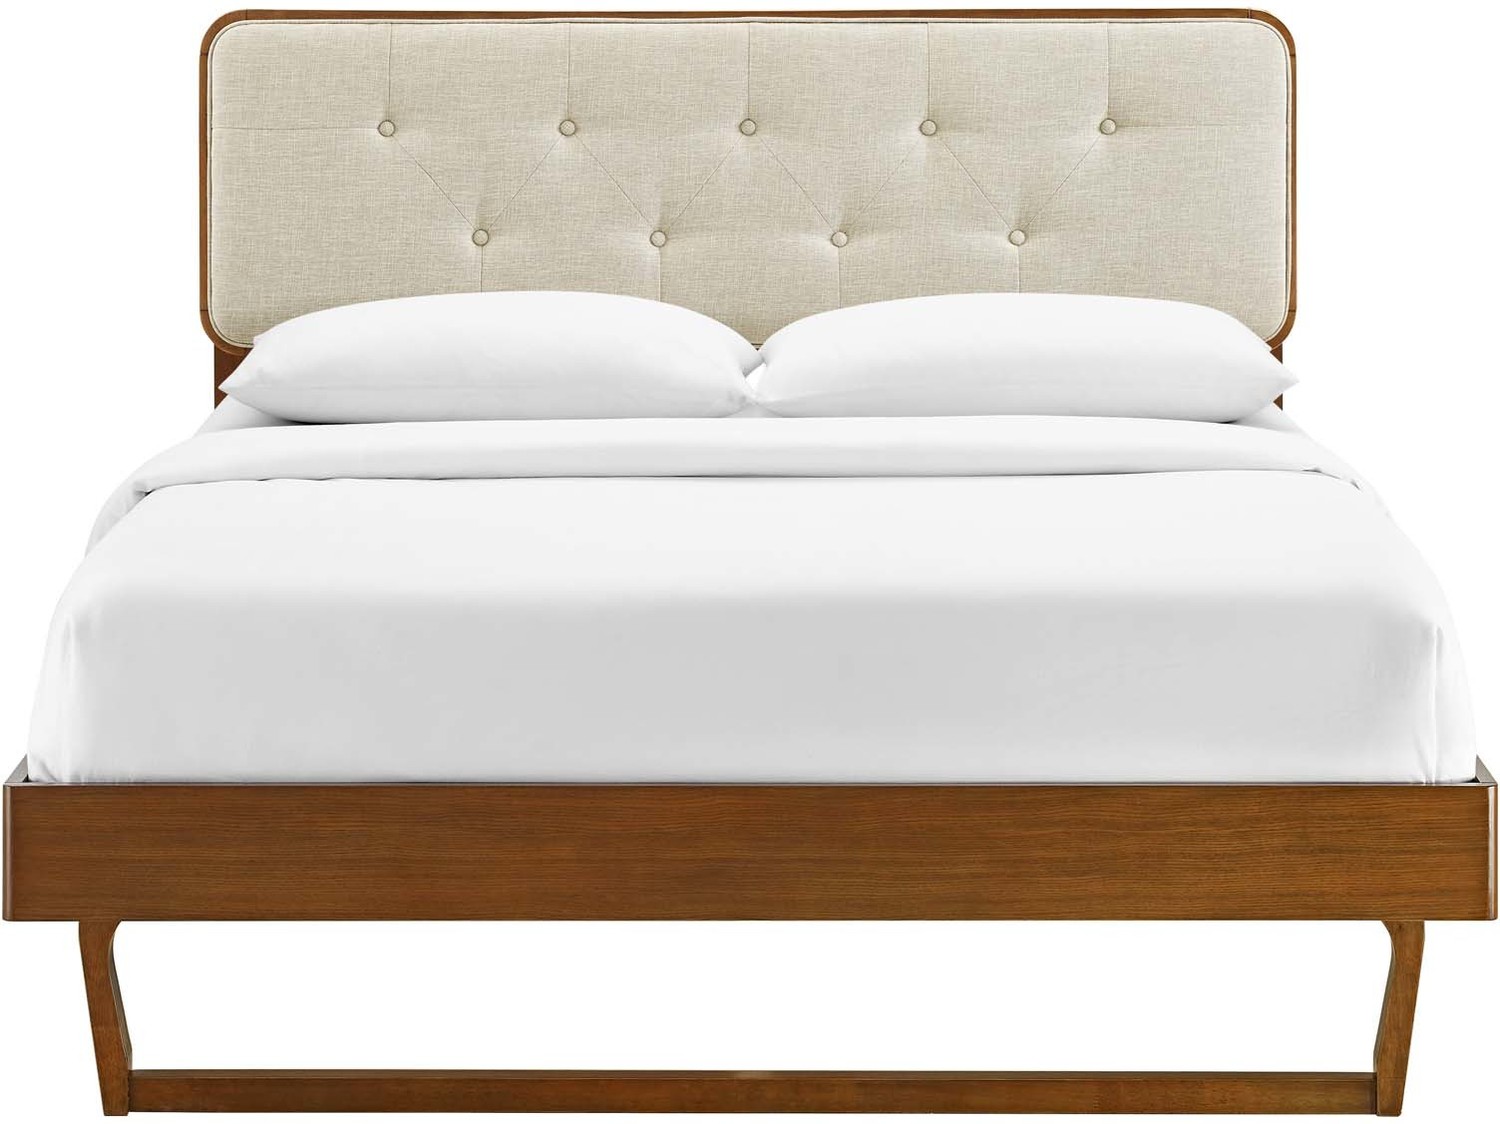 queen size platform bed with storage Modway Furniture Beds Walnut Beige